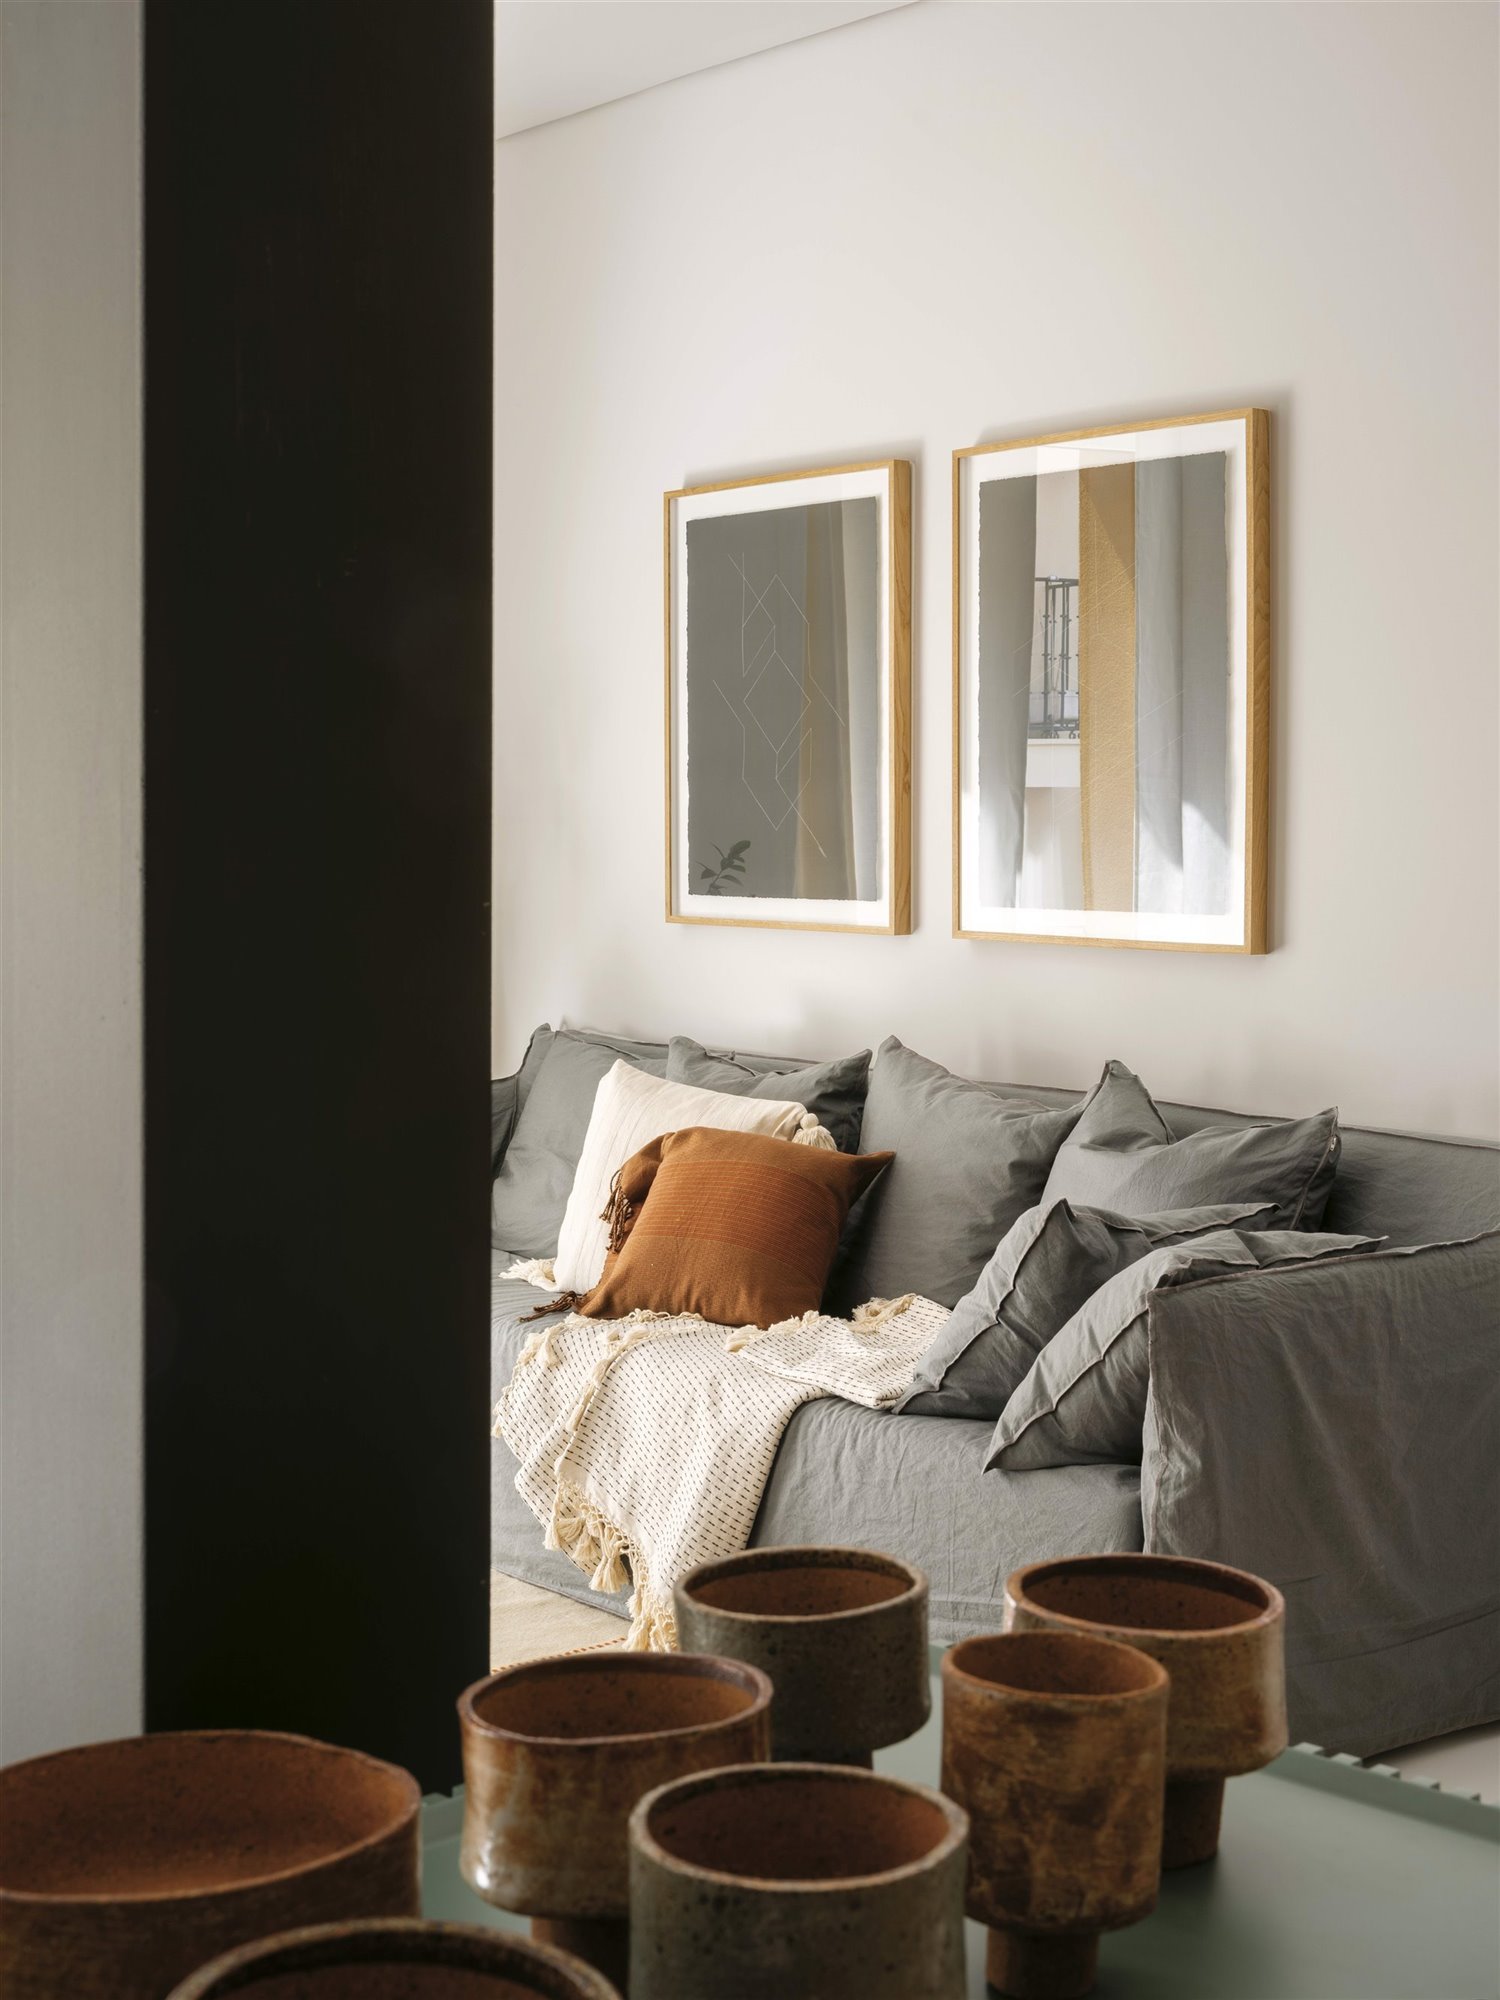 Salón con sofá gris y cojin marrón, cuencos de cerámica.